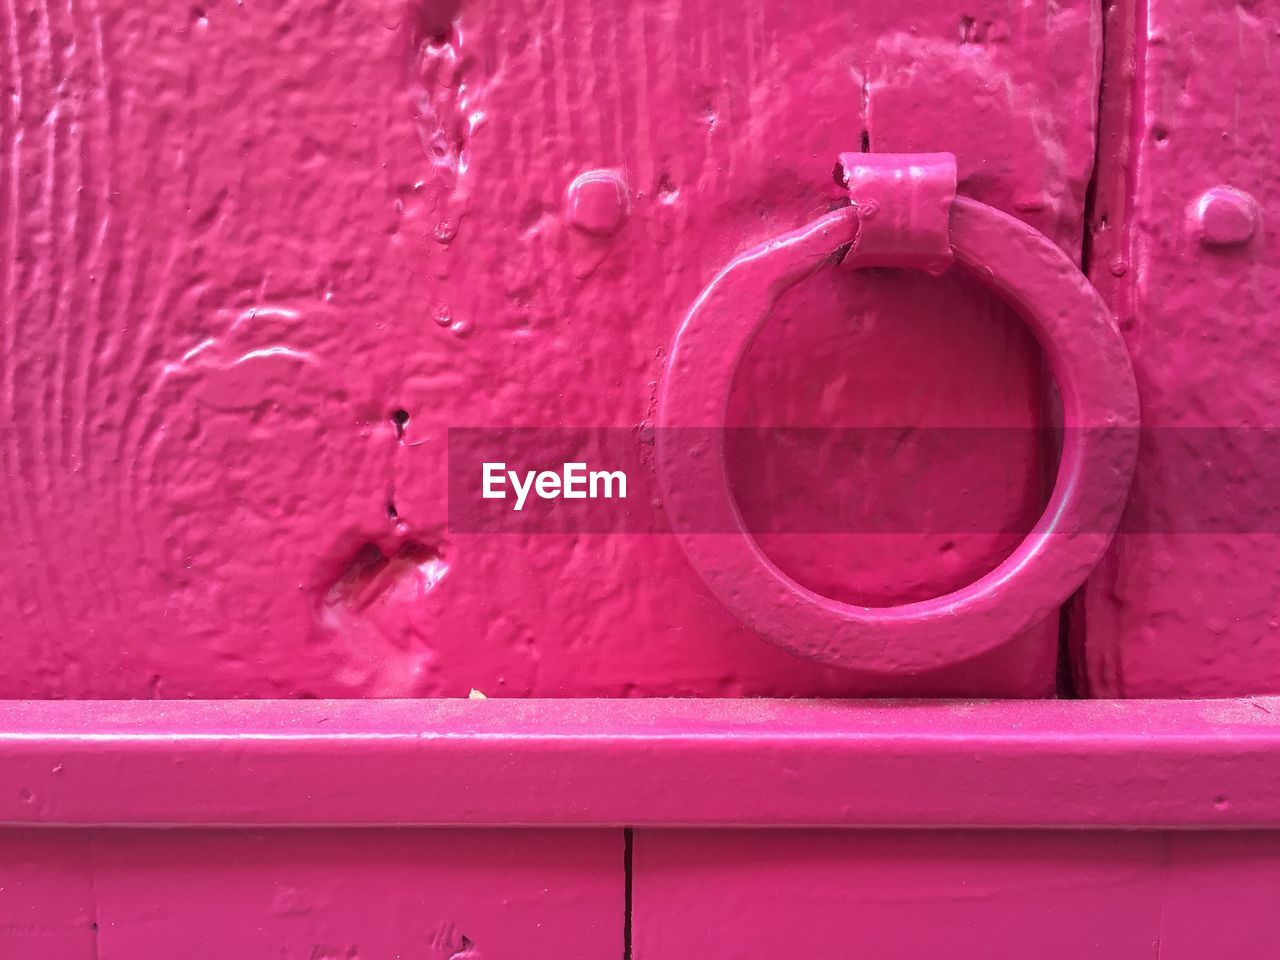 Close-up of pink metallic ring knocker on door